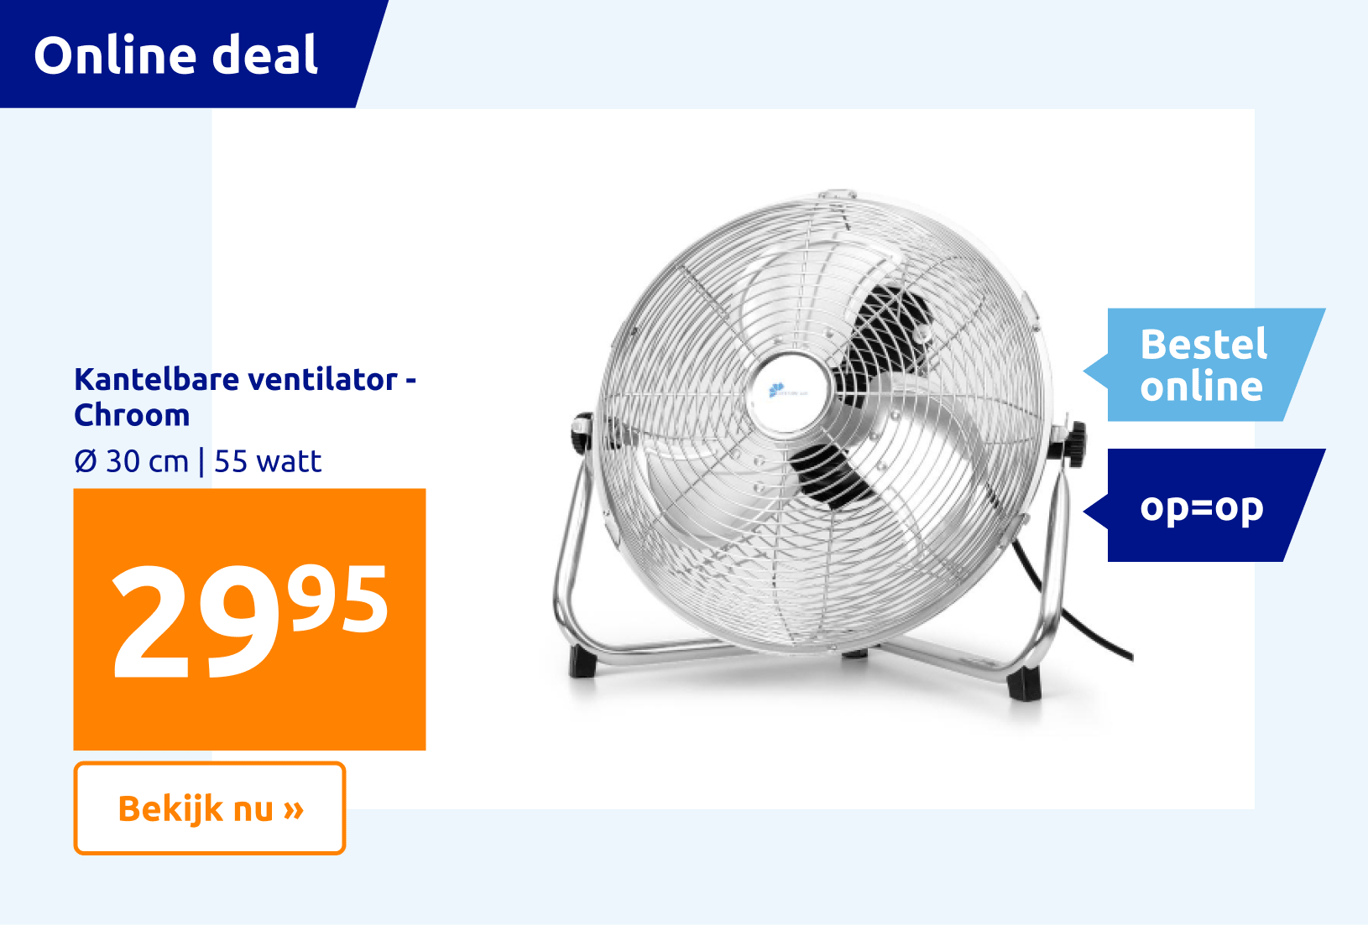 https://shop.action.com/nl-nl/p/8711252195902/kantelbare-ventilator-chroom?utm_source=web&utm_medium=ecomlink&utm_campaign=ecom